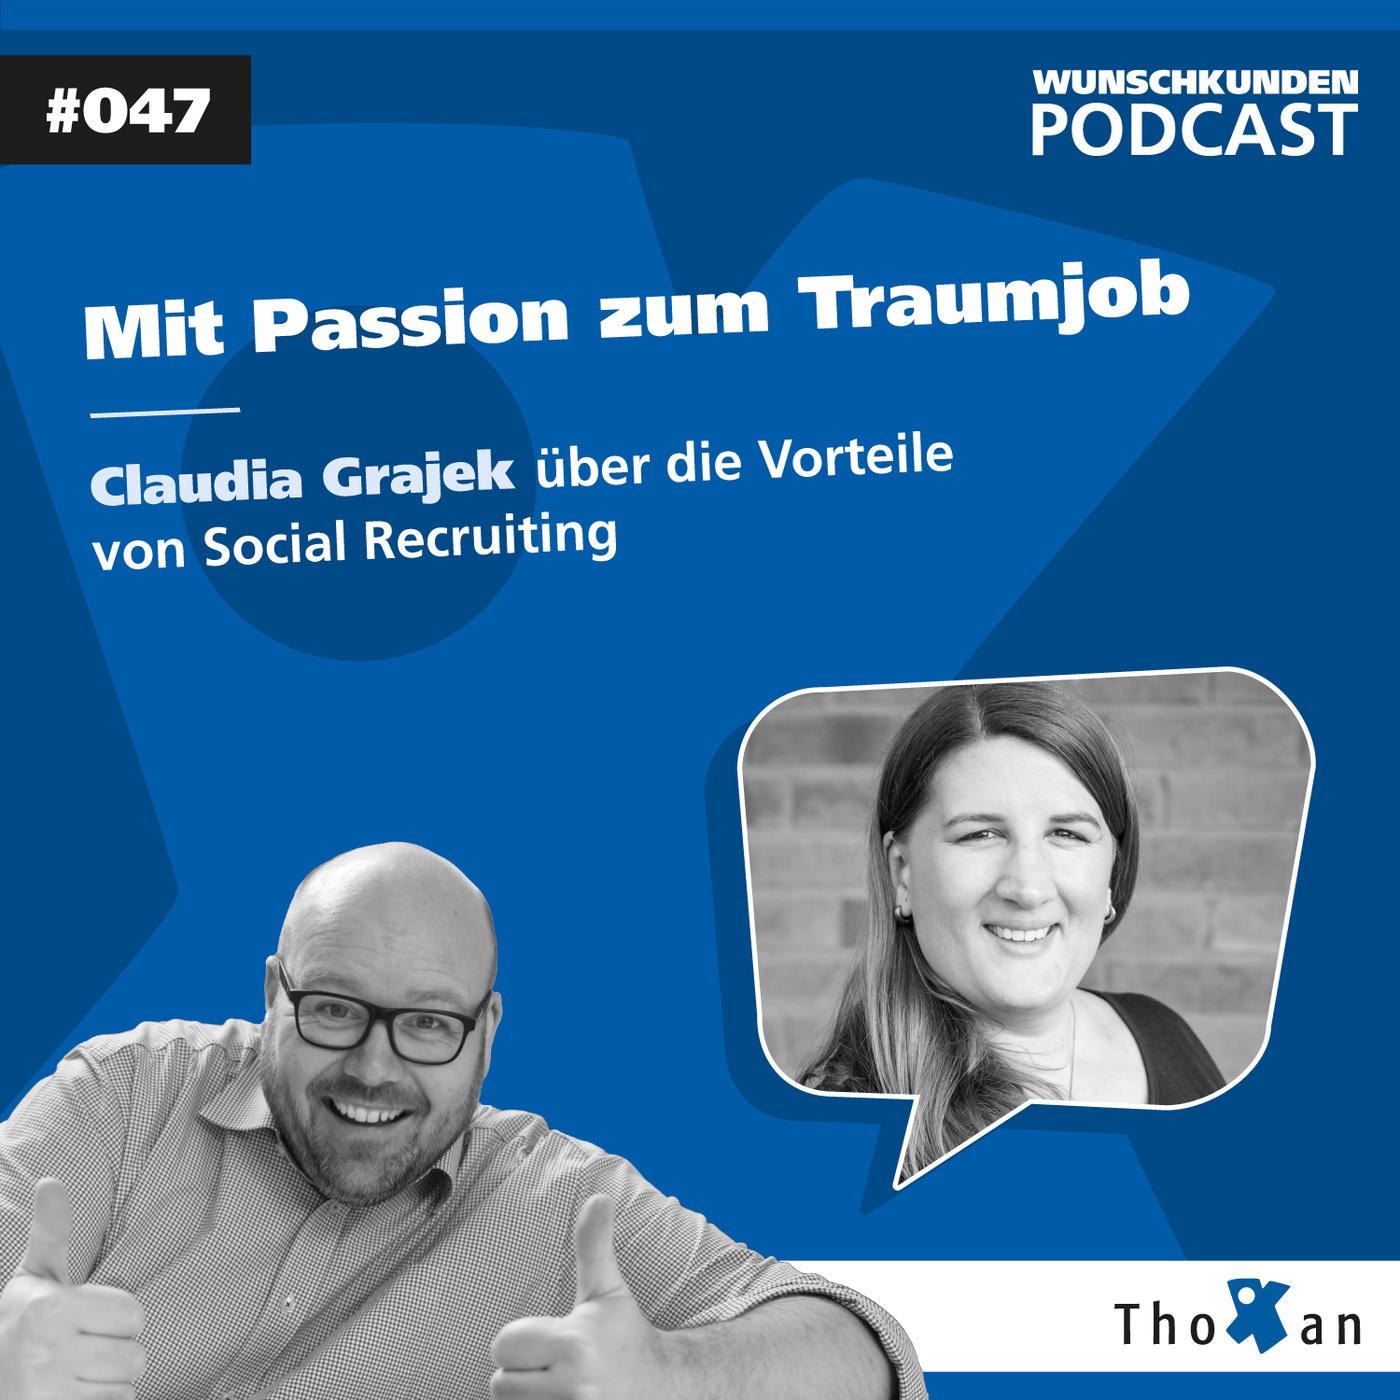 Mit Passion zum Traumjob: Claudia Grajek über die Vorteile von Social Recruiting